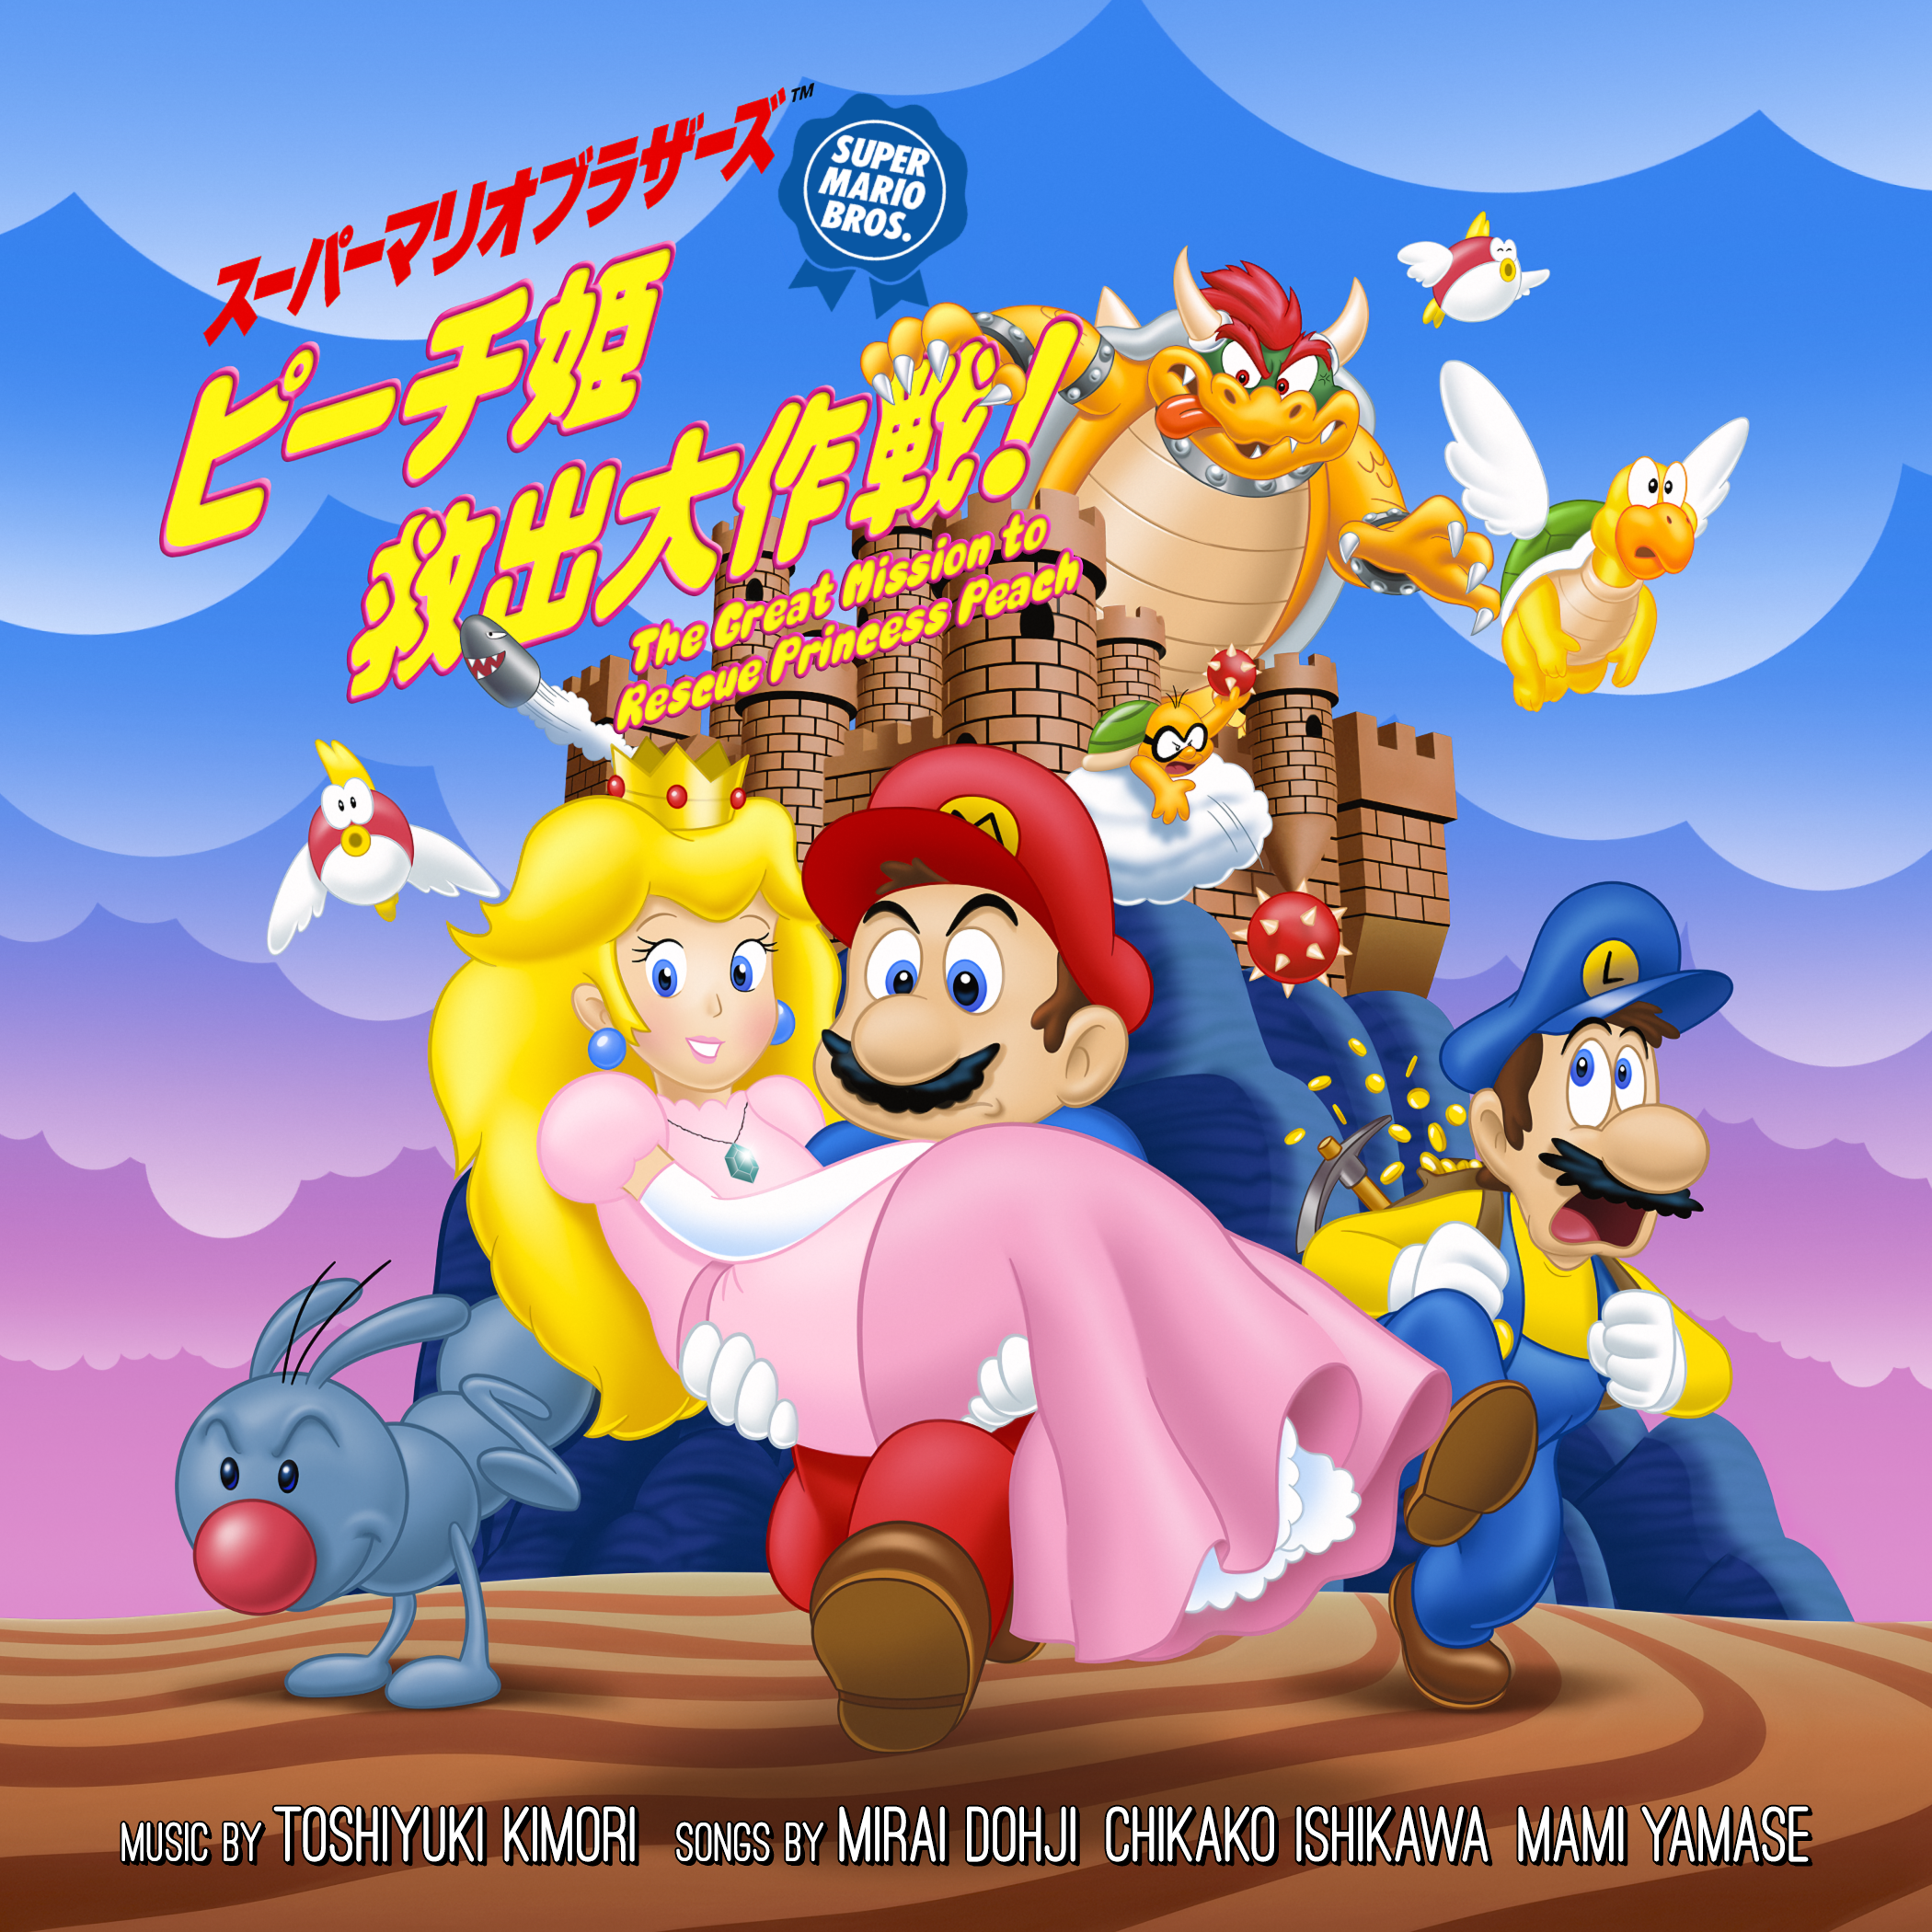 Super Mario Bros. Le film d'animation rare de 1986 totalement restauré, à  voir dès aujourd'hui en 4K - Nintendo - Nintendo-Master